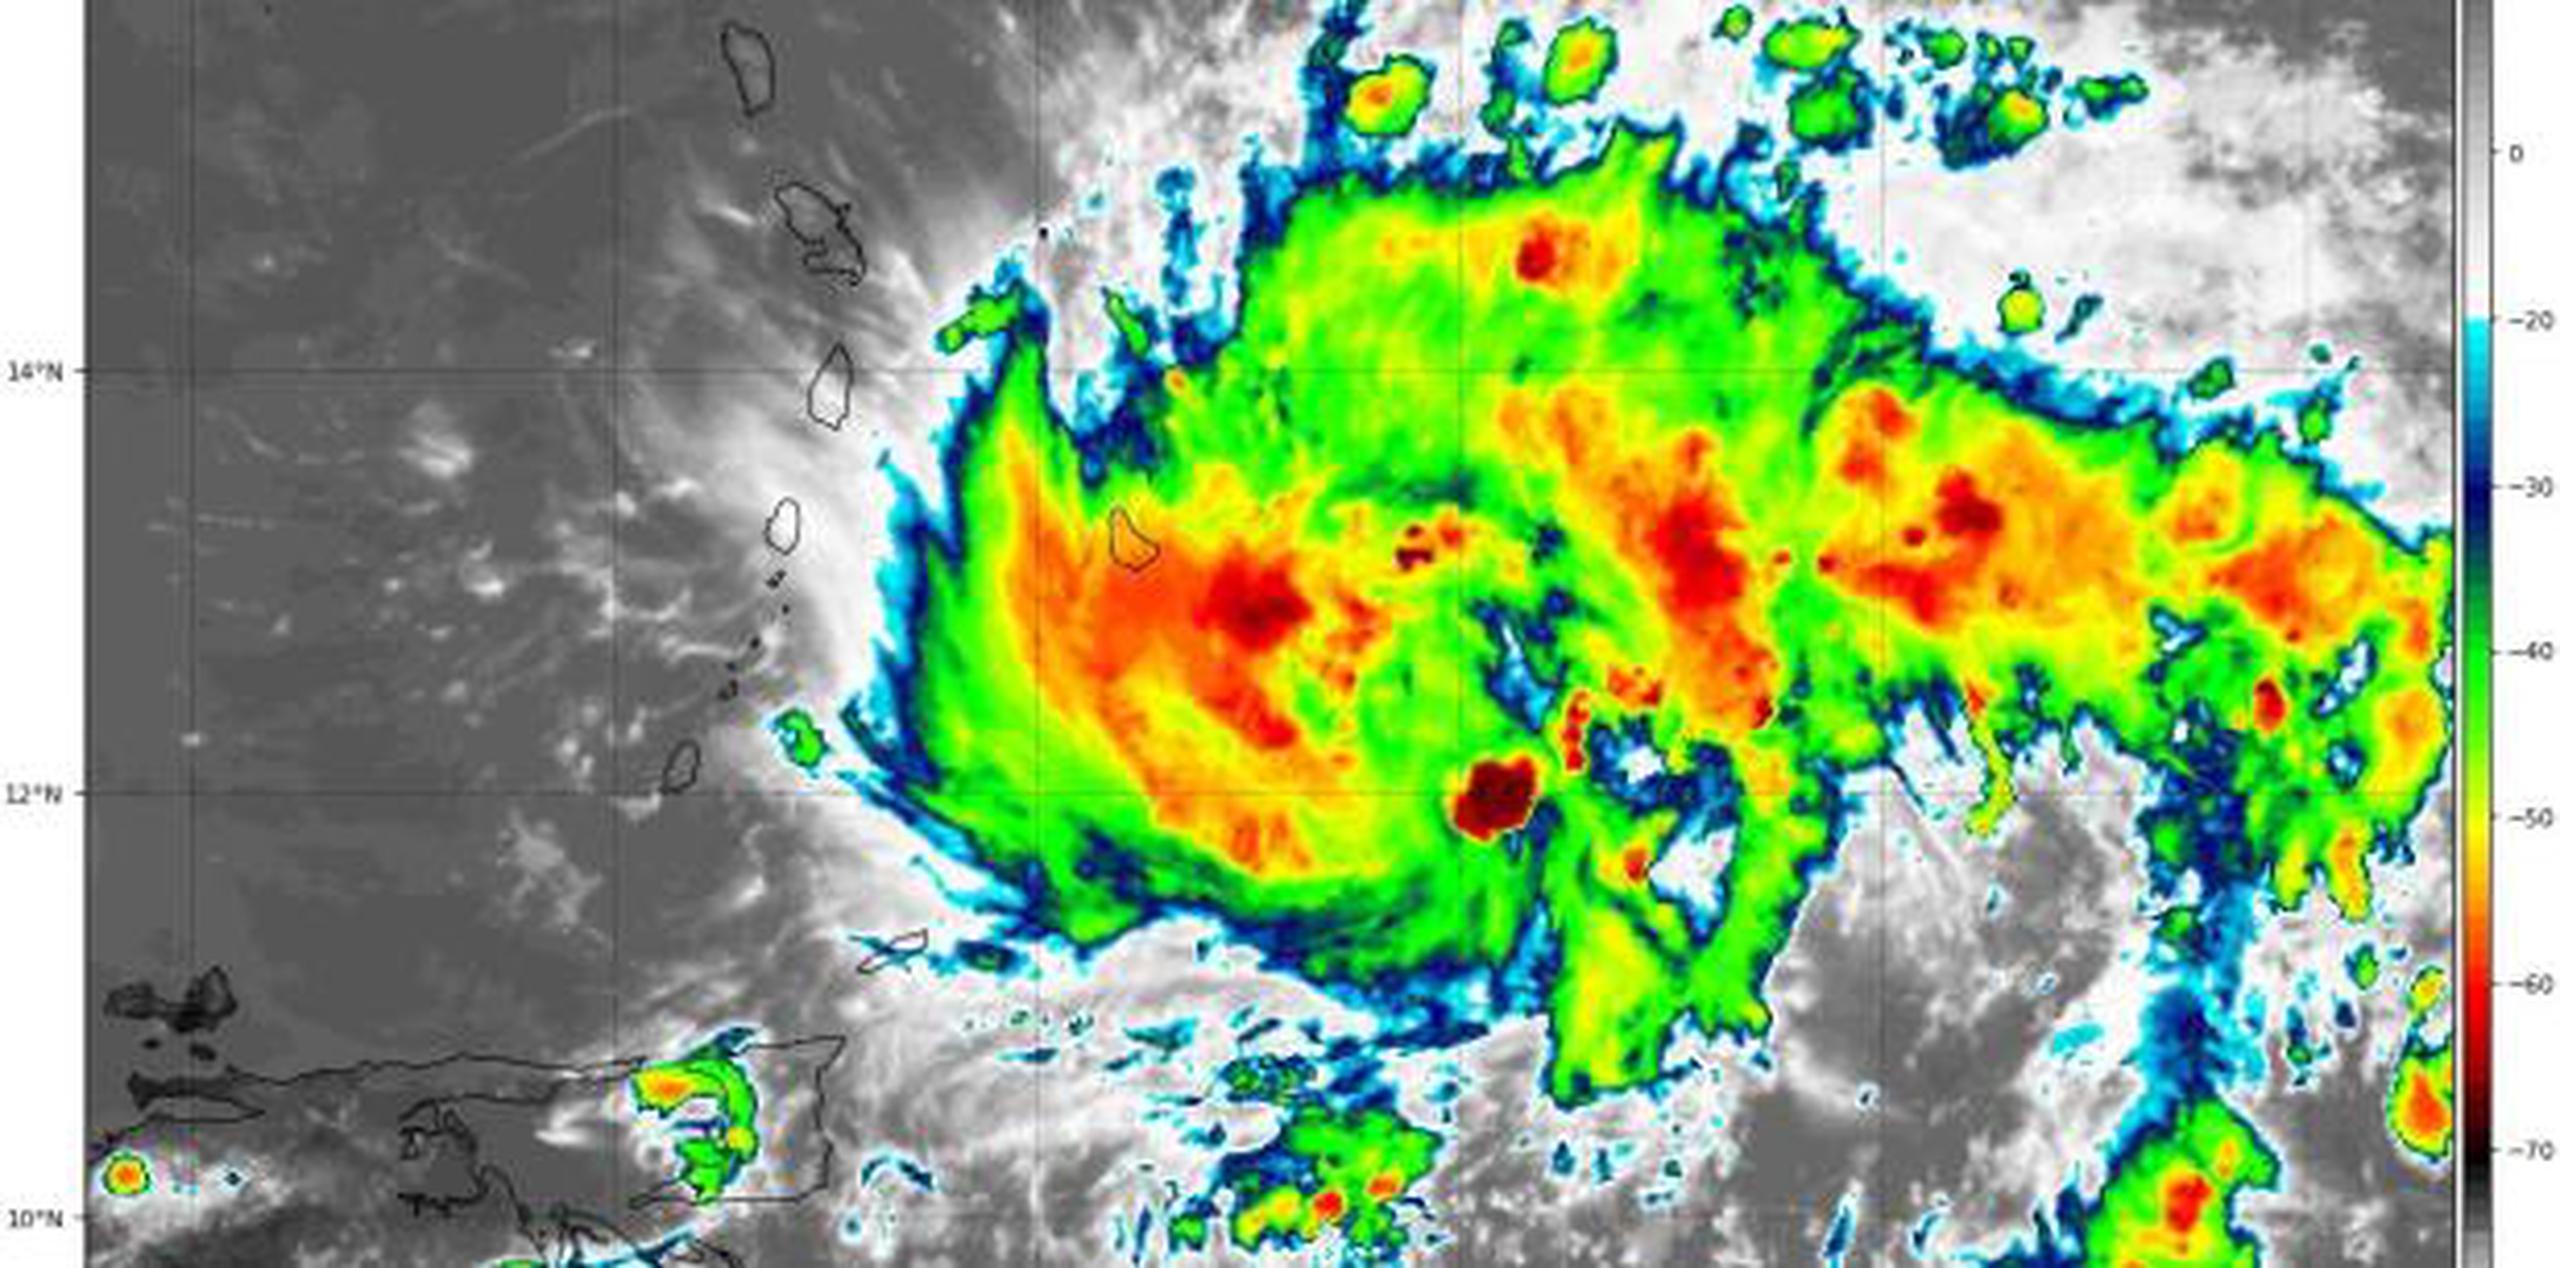 Se prevé que la tormenta deje caer entre 8 y 20 centímetros (3 y 8 pulgadas) de lluvia en Barbados e islas aledañas, con cantidades aisladas de 25 centímetros (10 pulgadas). (NOAA)